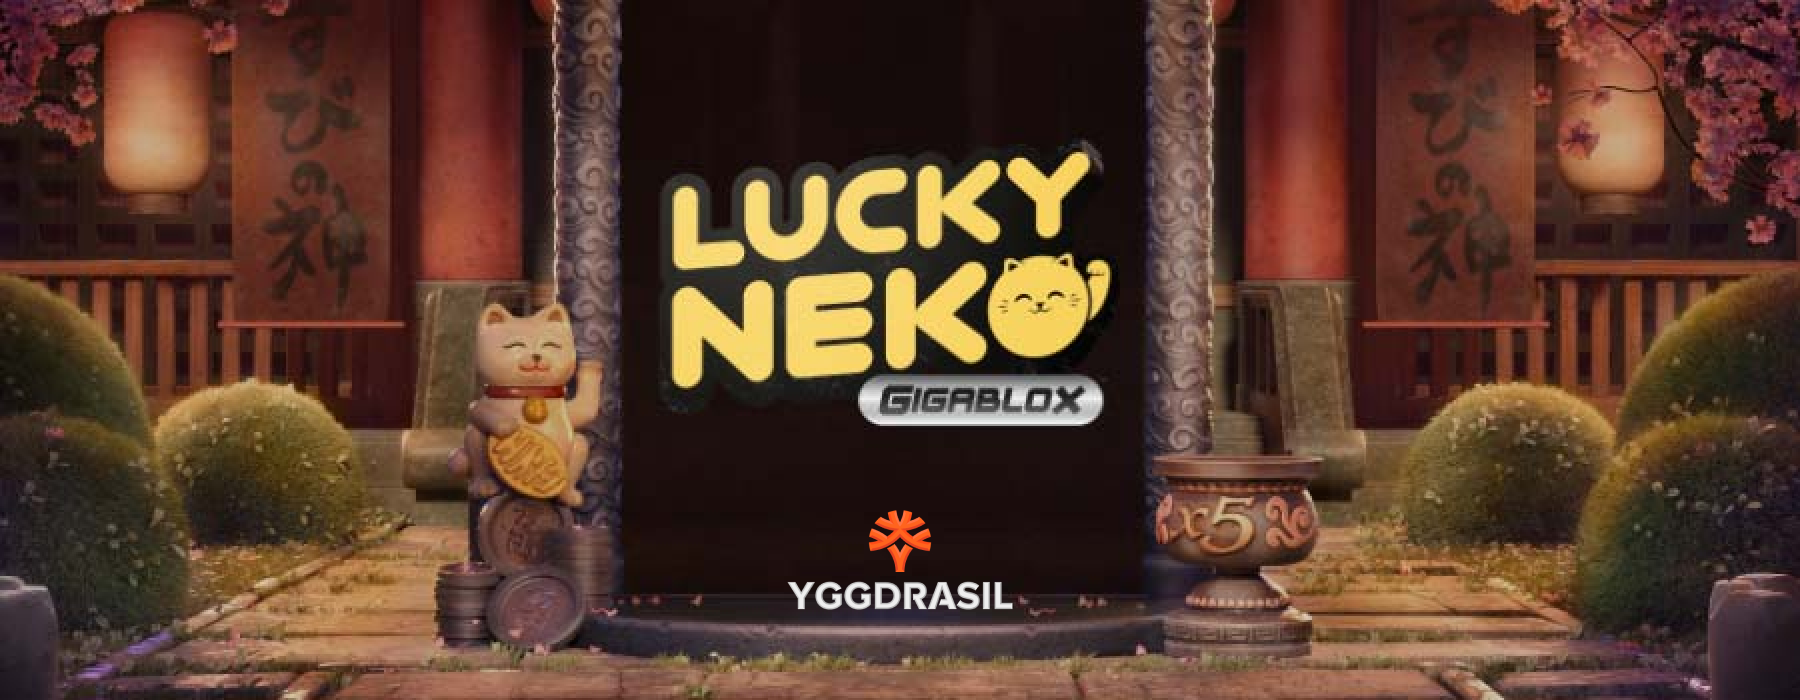 Lucky Neko Gigablox на Yggdrasil